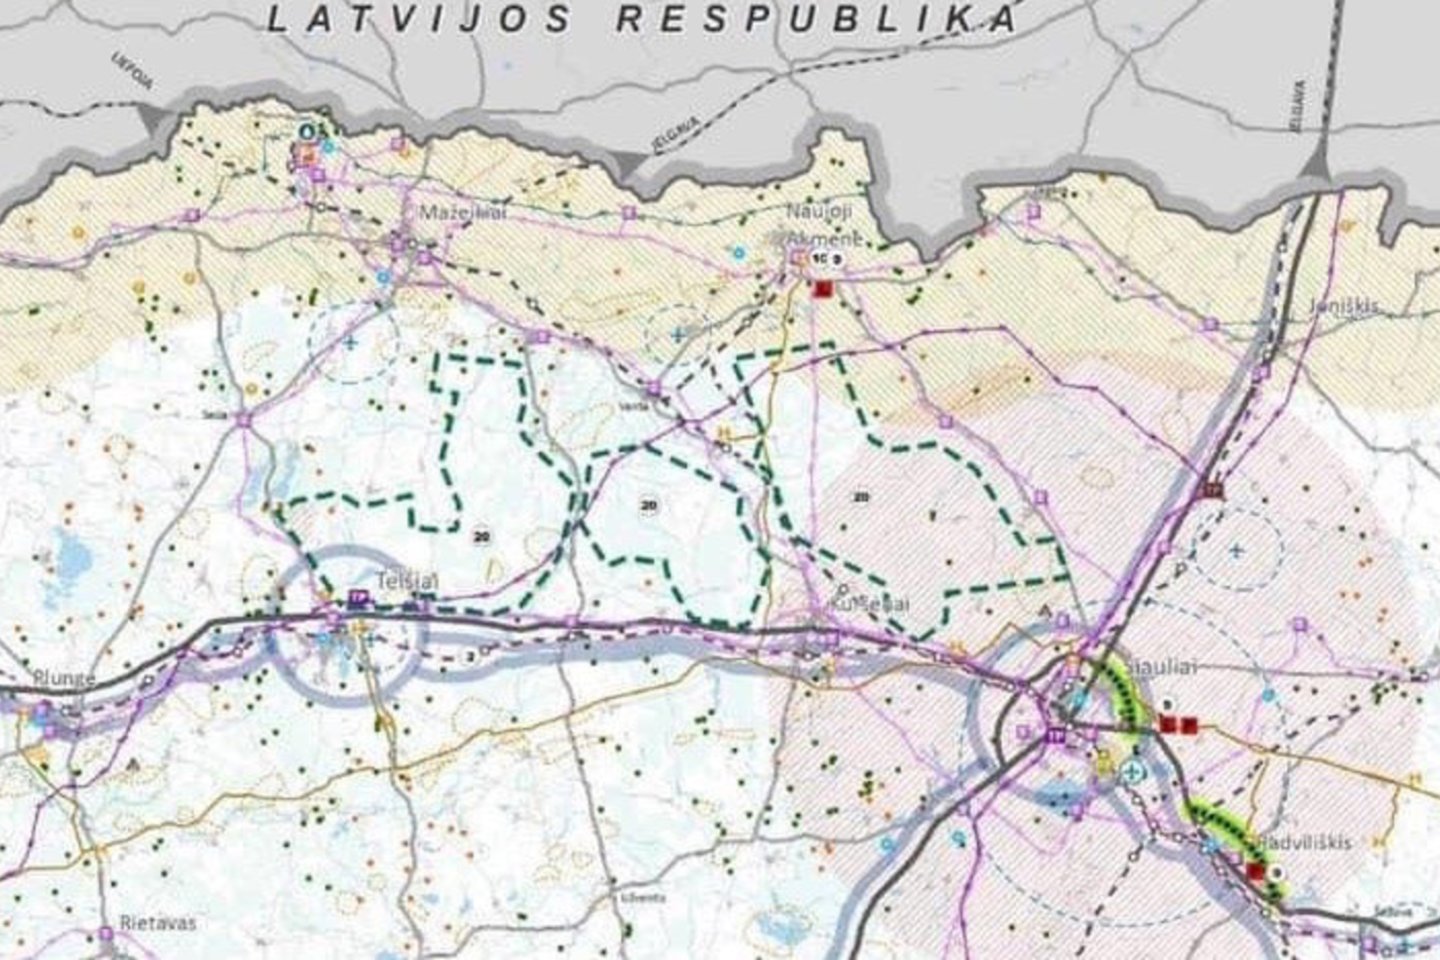 Būsimam poligonui rezervuoti žemės plotai pažymėti Lietuvos Respublikos bendrajame plane spalio 3 dieną.<br>LR bendrojo plano nuotr.